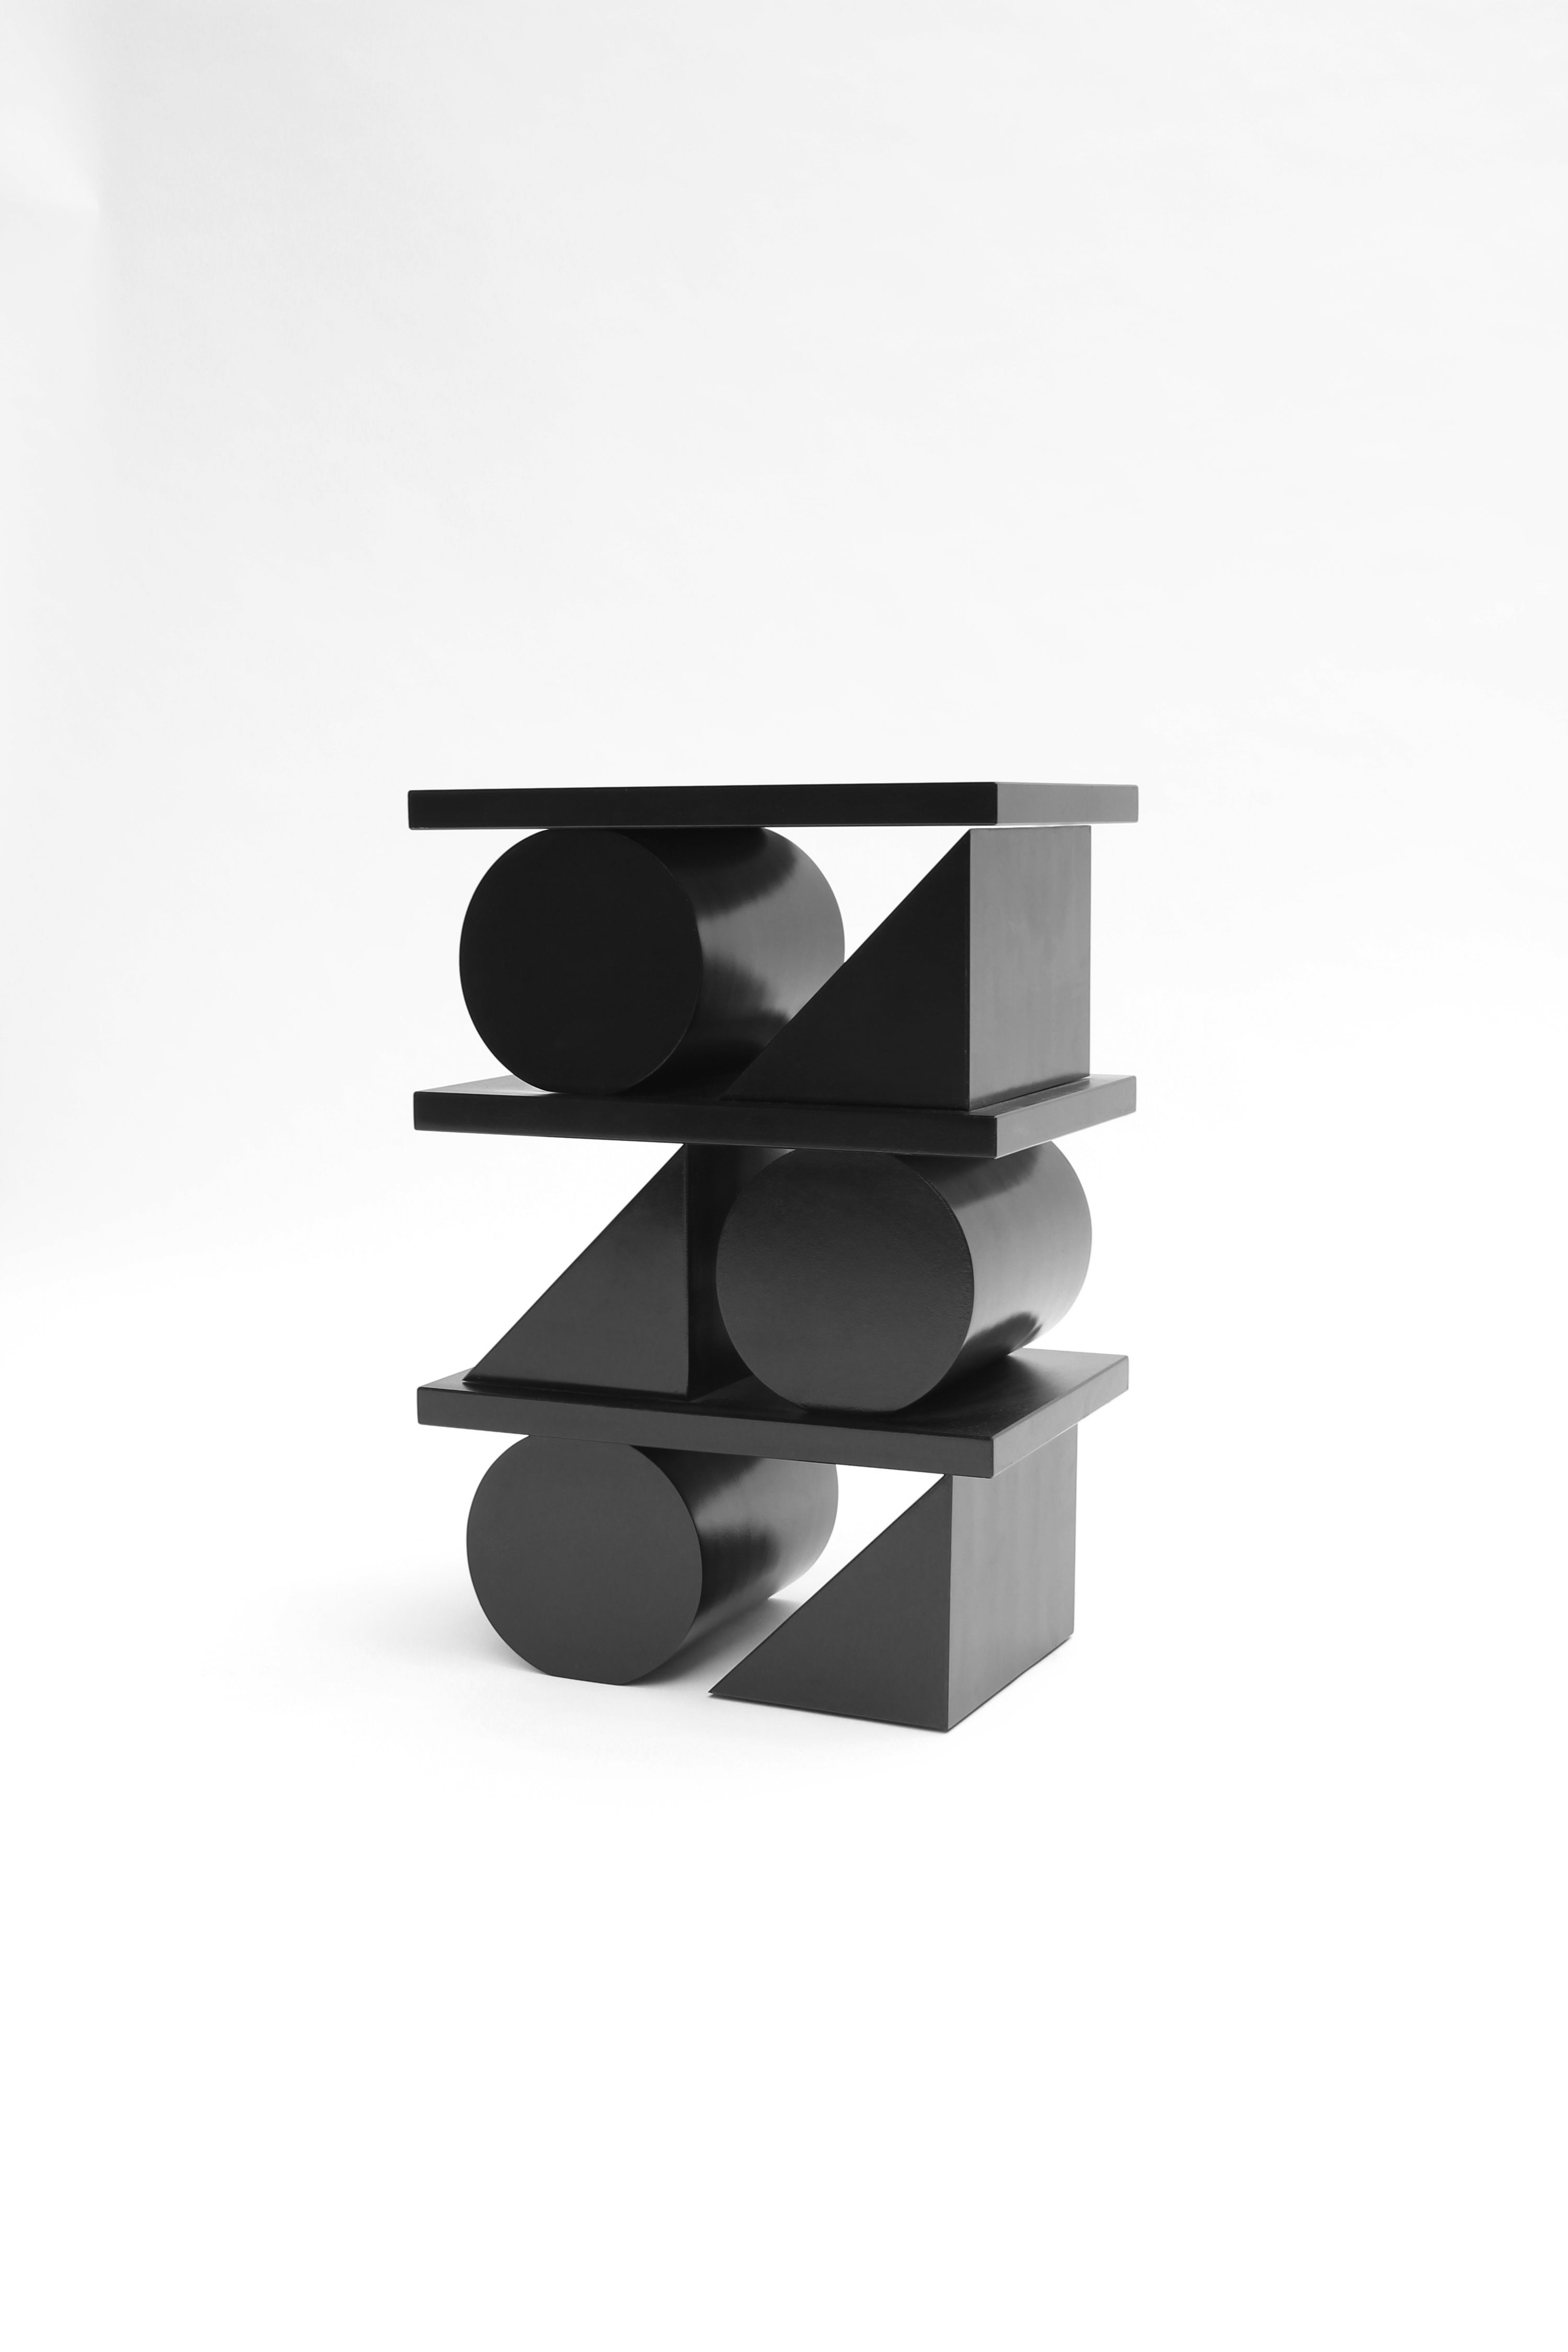 X4 Sculpture by Studio Verbaan